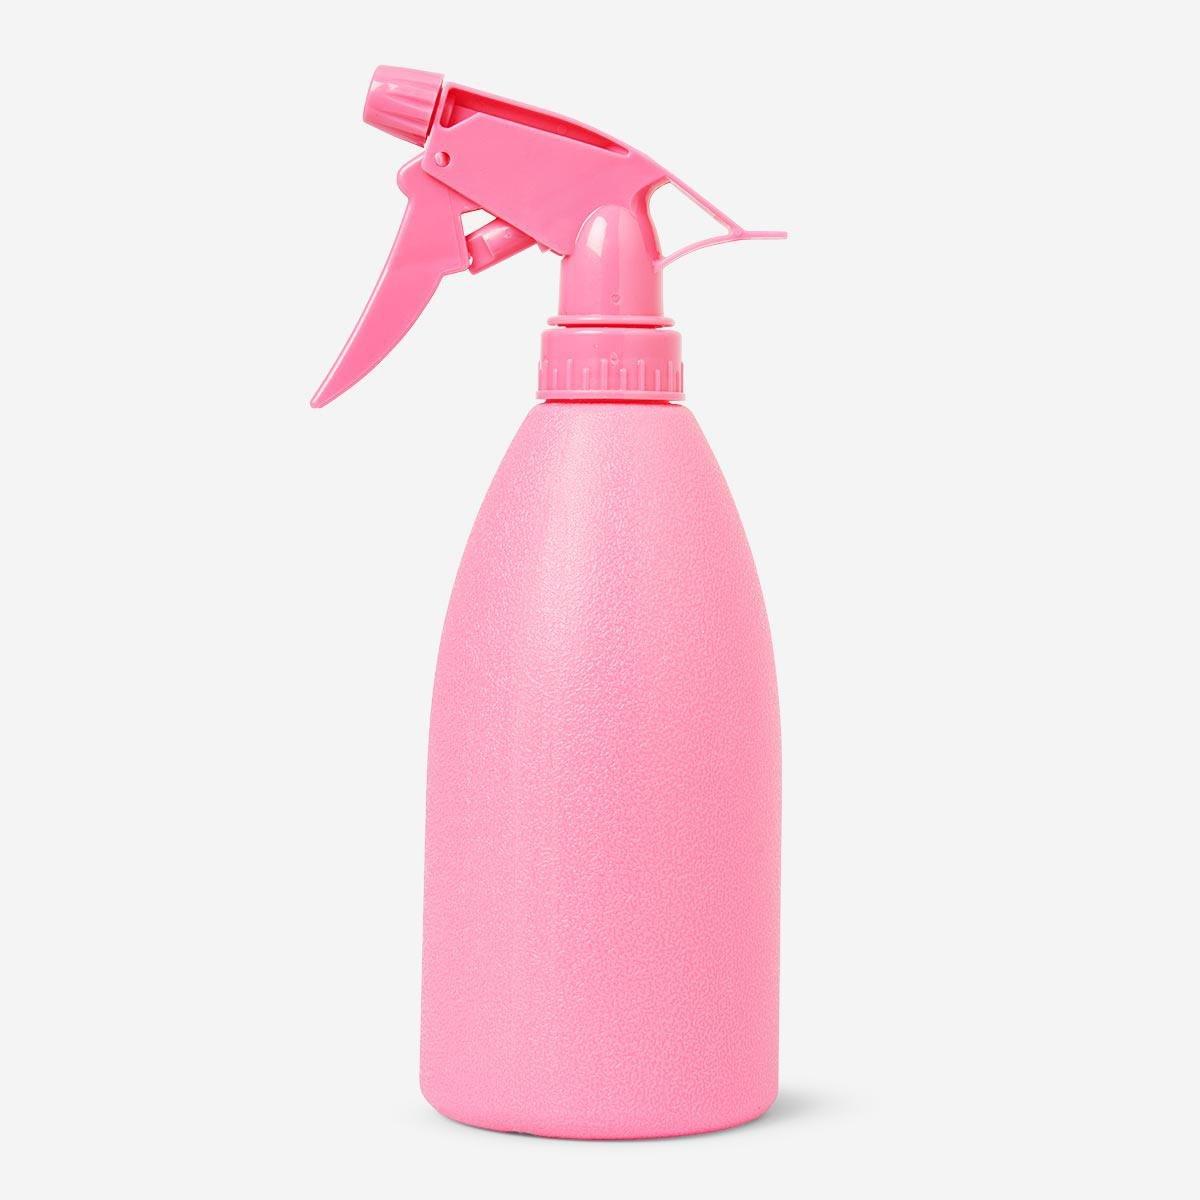 Pink mist spray bottle